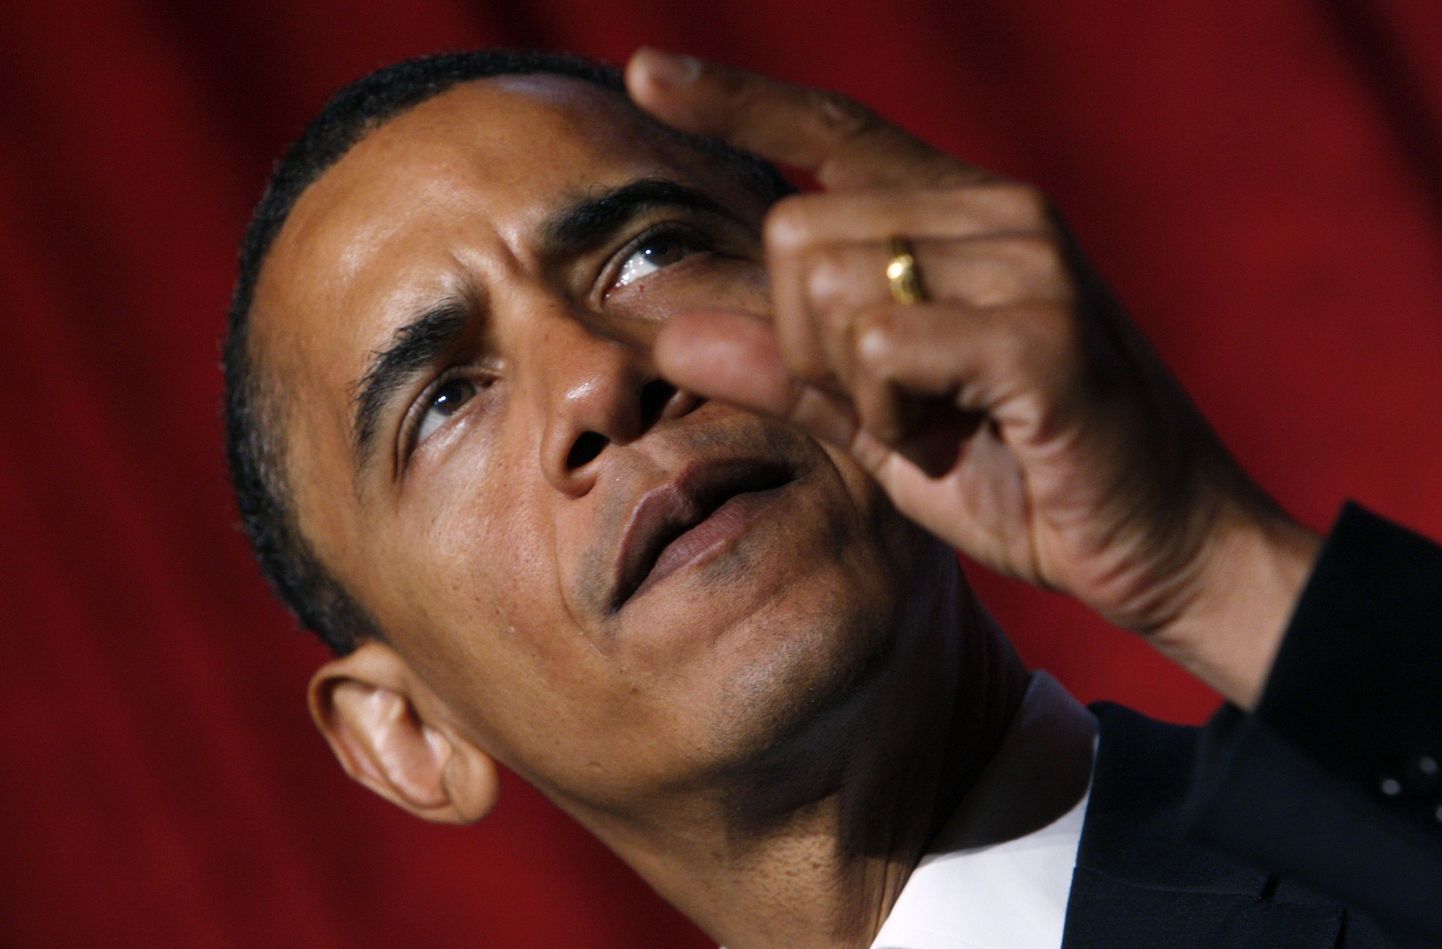 USA demokraatide presidendikandidaat, Illinoisi senaator Barack Obama paljastamas oma karmimat poolt.